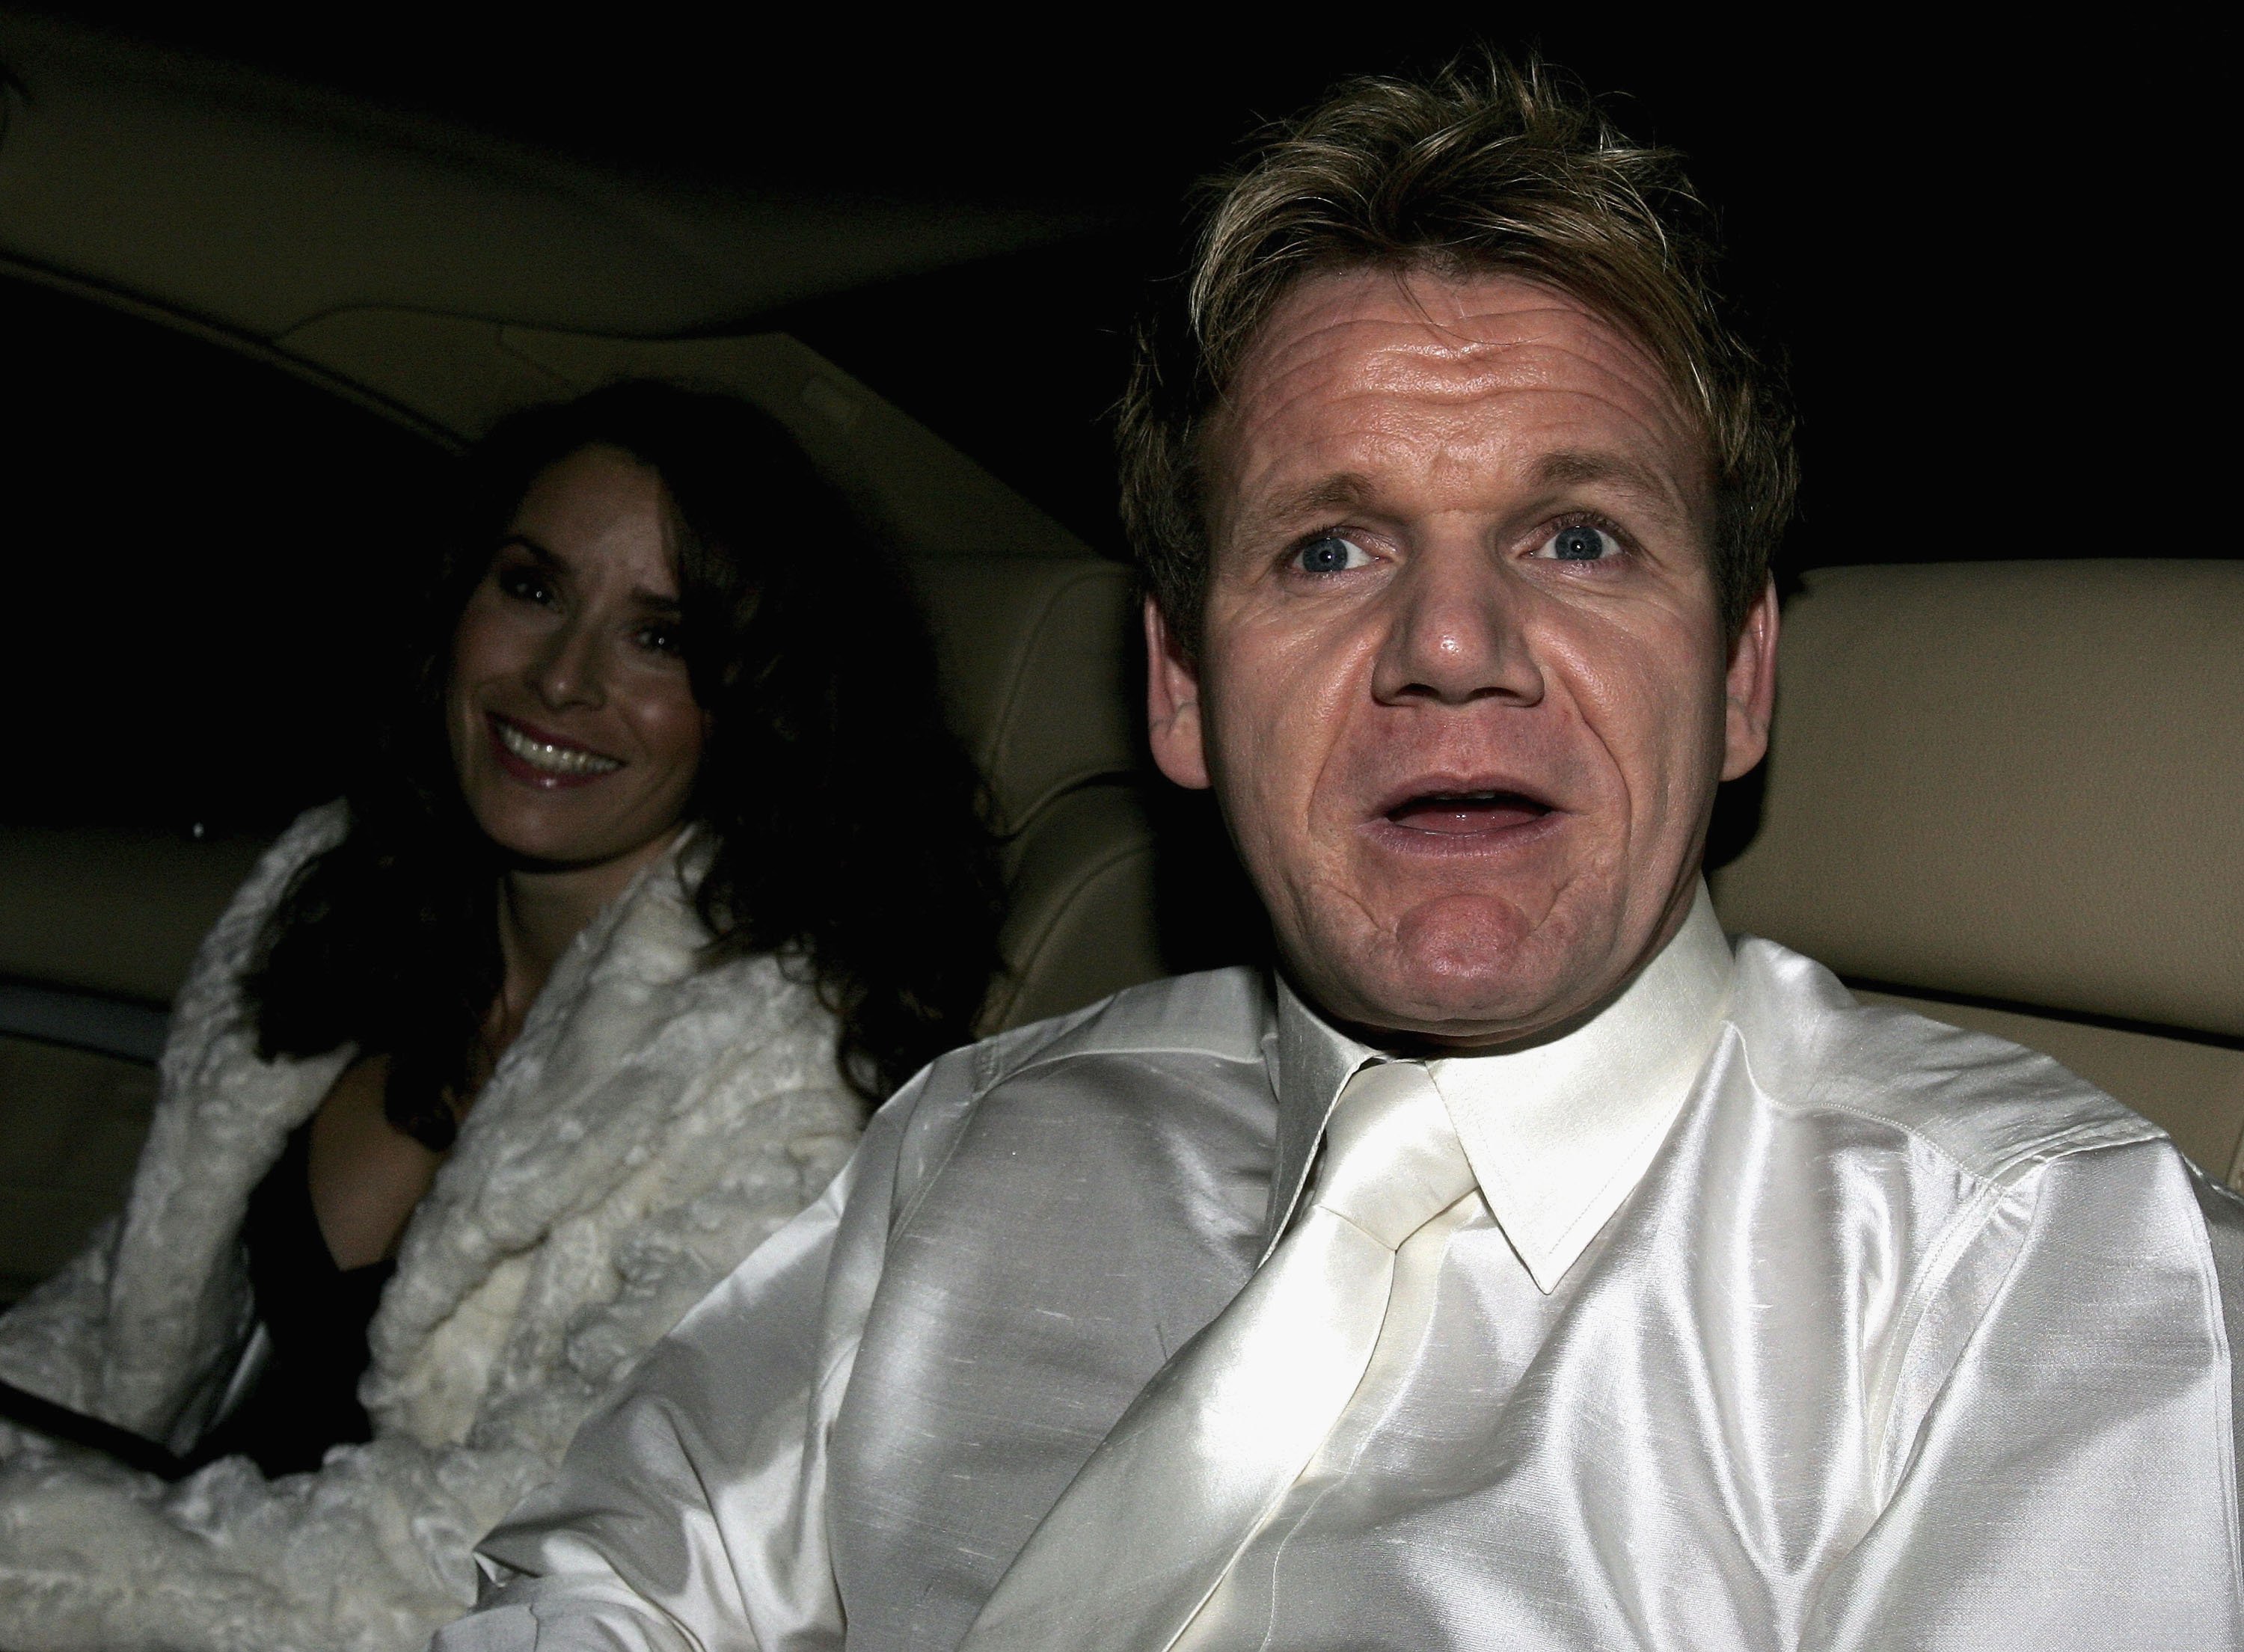 Le célèbre chef Gordon Ramsay et sa femme Tana arrivent à la réception qui suit la cérémonie de partenariat civil de Sir Elton John et David Furnish le 21 décembre 2005 à Windsor, en Angleterre. | Source : Getty Images